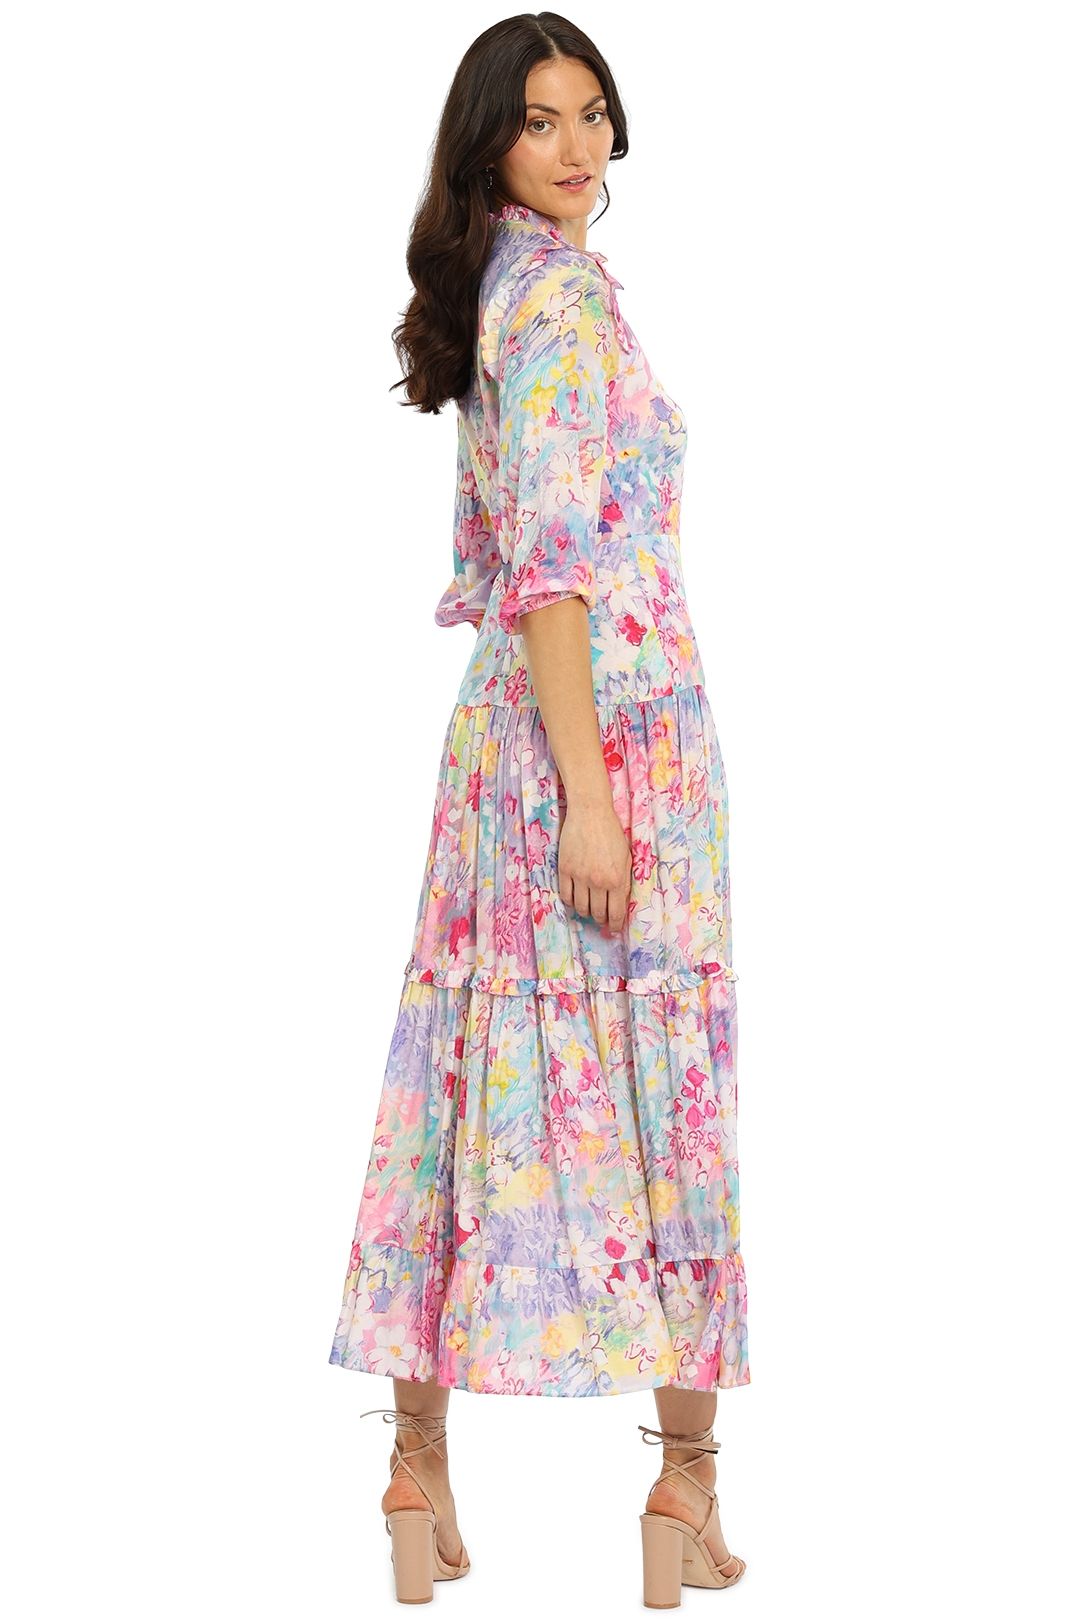 Rixo London Monet Dress Floral Full Skirt